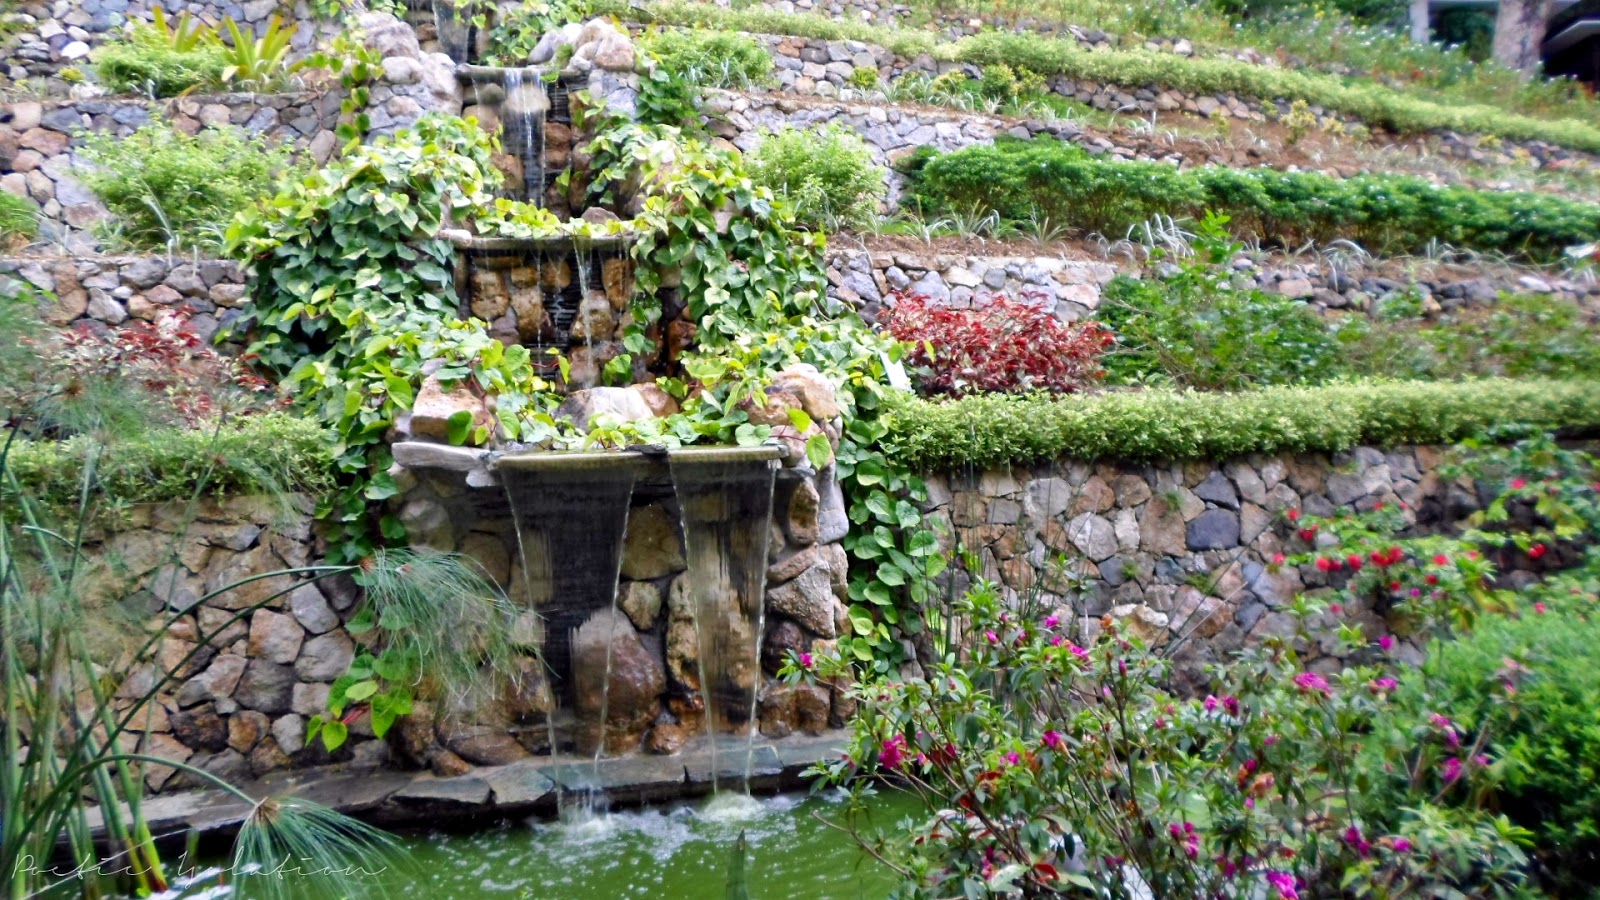 Poetic Isolation Terrazas De Flores Botanical Garden Cebu